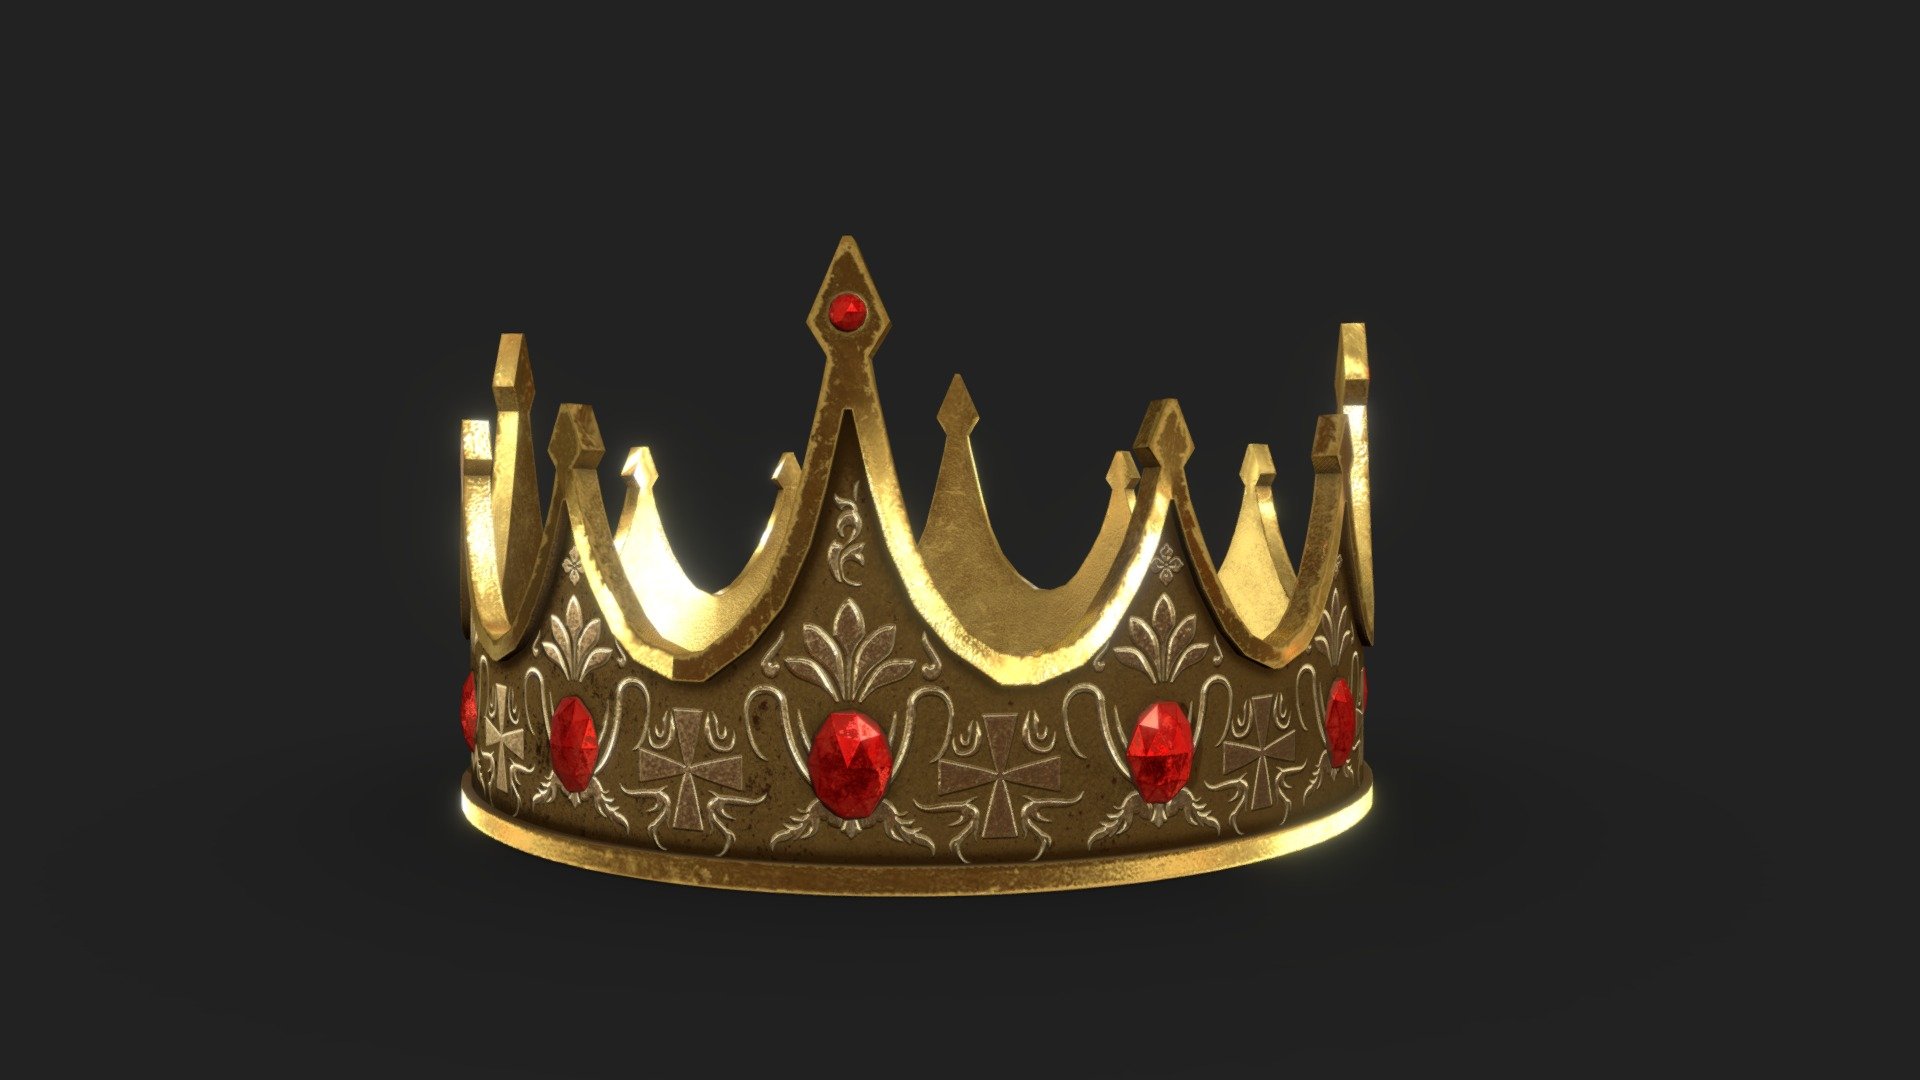 Miniature 3D Royal Crown-Favorvillage